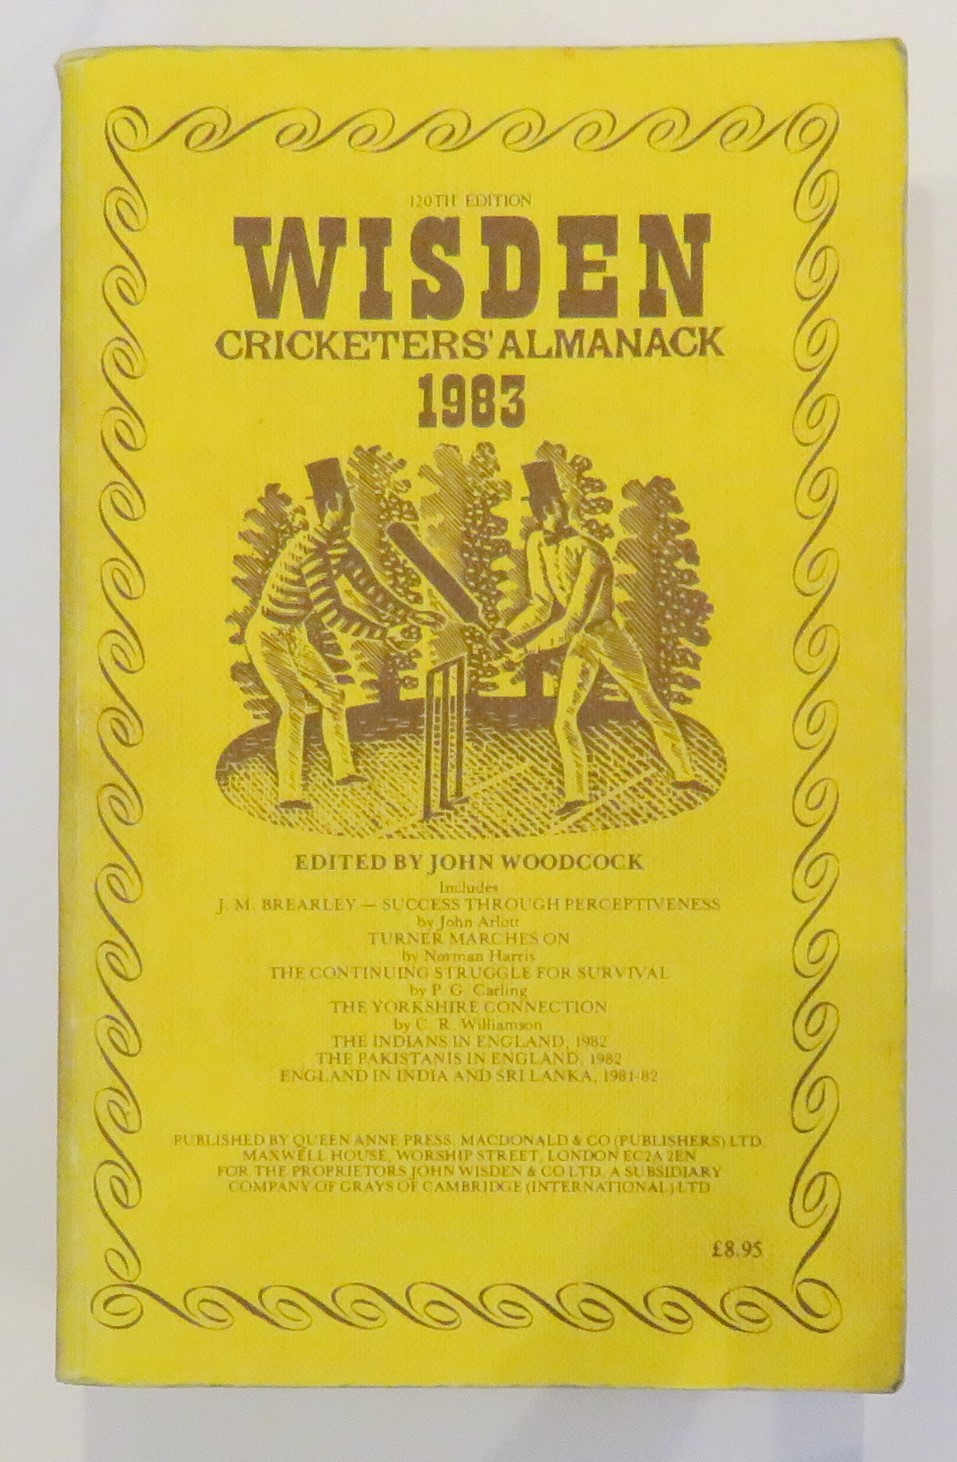 Wisden Cricketers' Almanack 1983